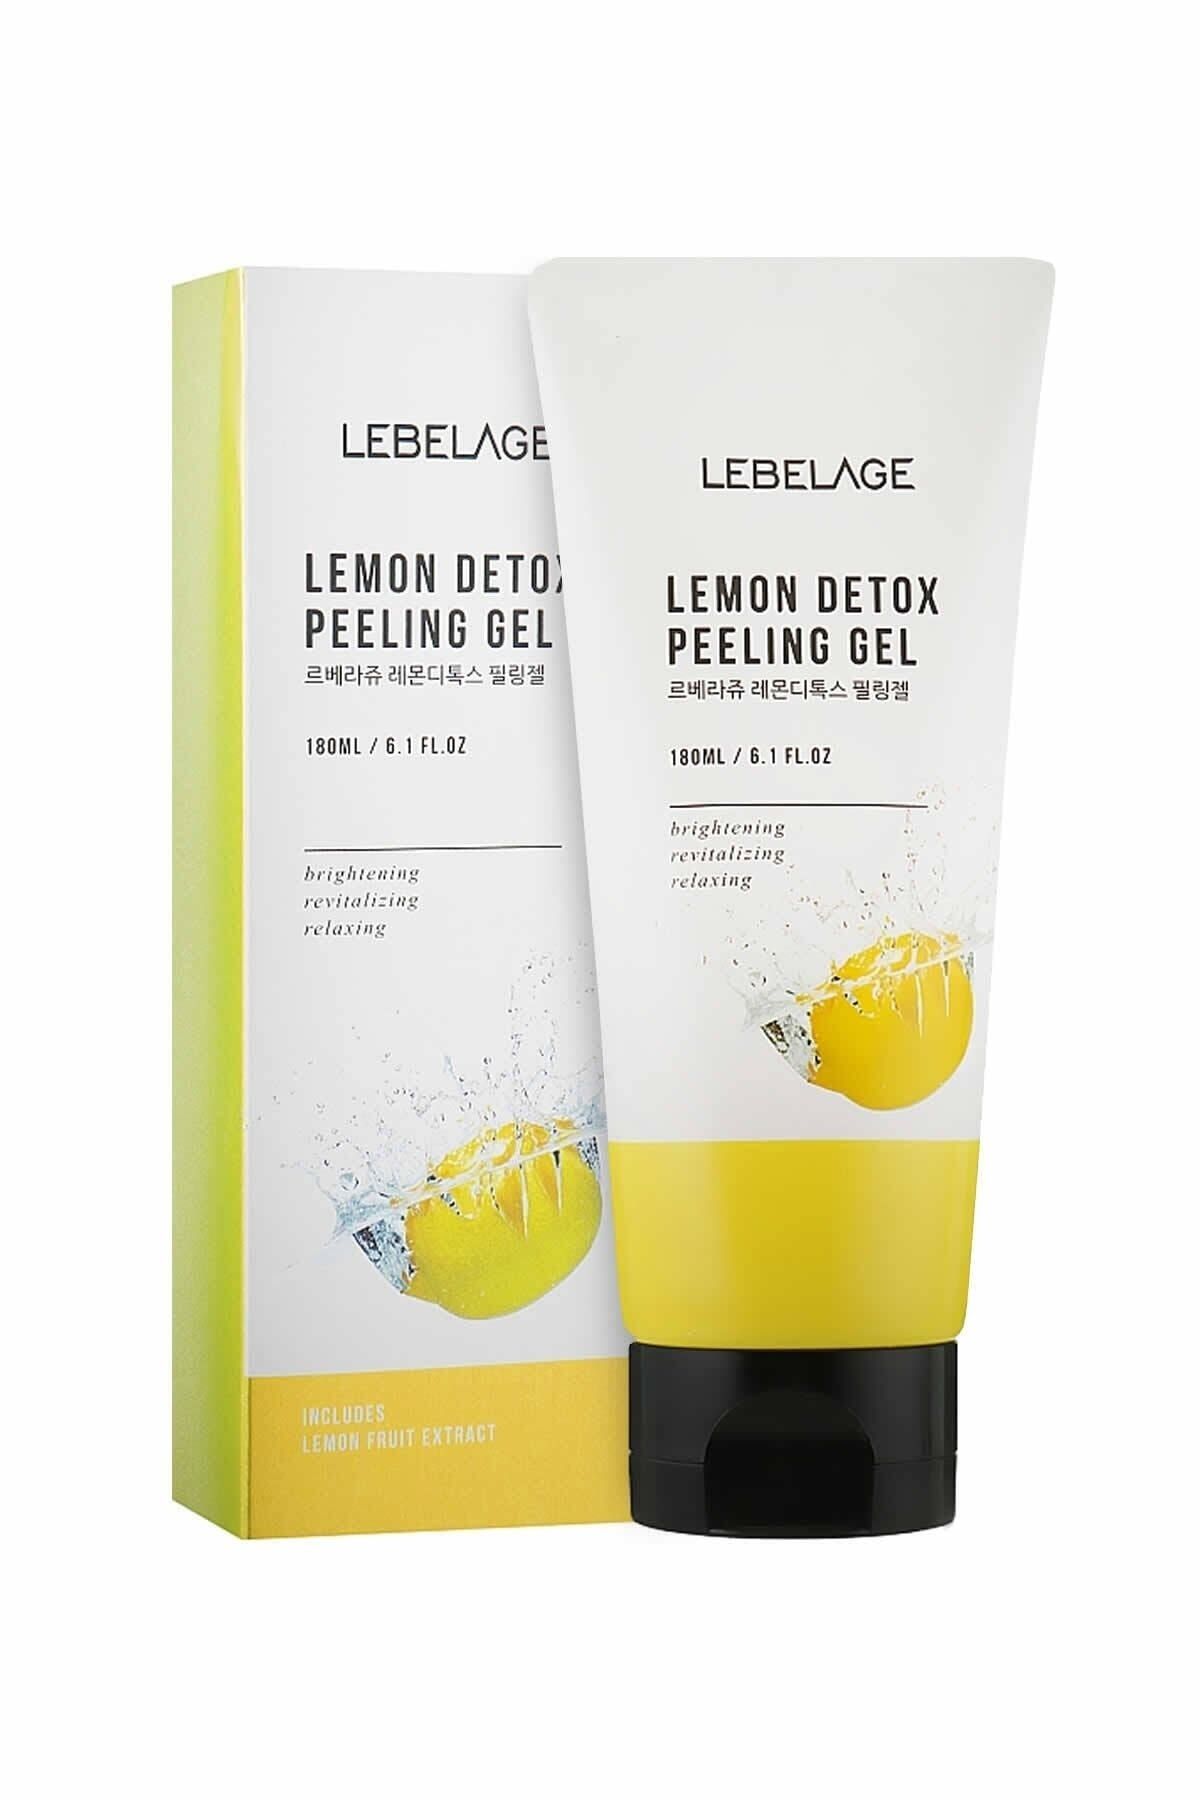 LEBELAGE Aydınlatıcı, Canlandırıcı Detox Etkisi Detox Peeling Jel Lemon Detox Peeling Gel